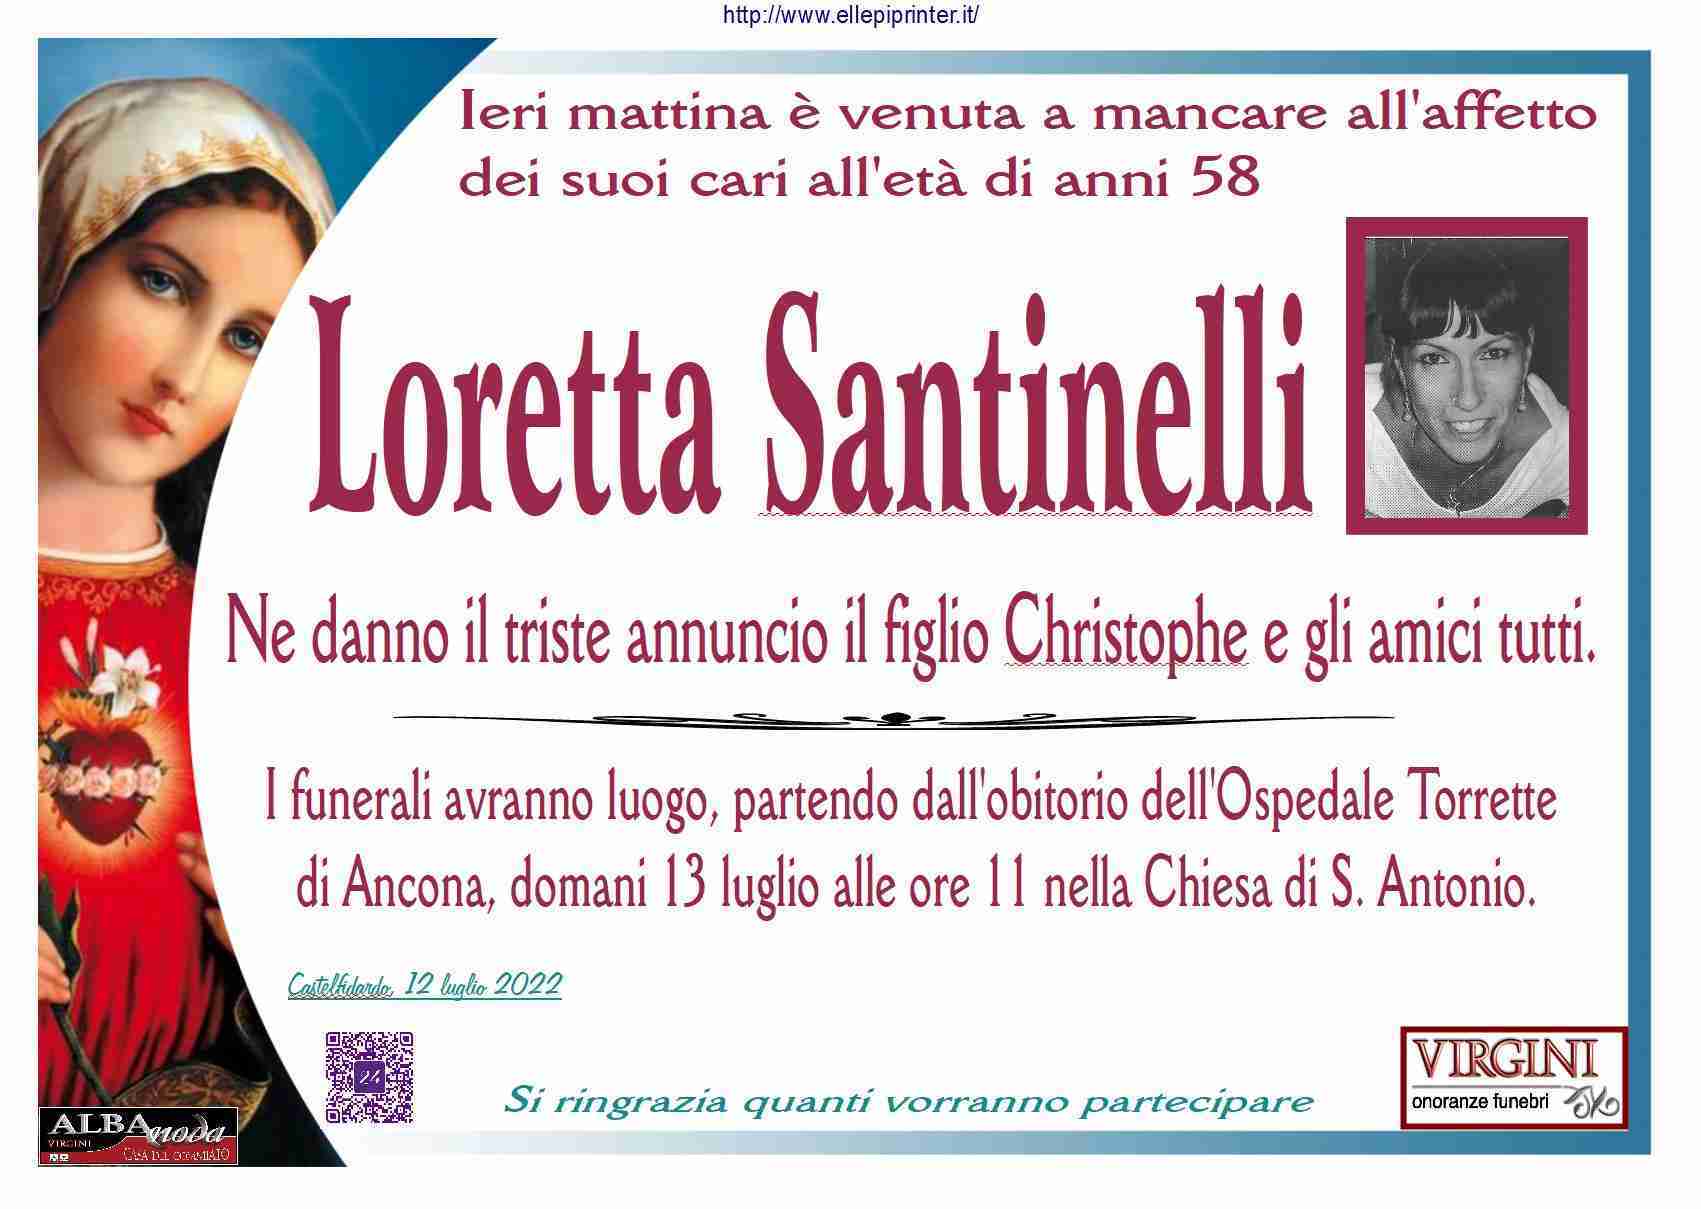 Loretta Santinelli